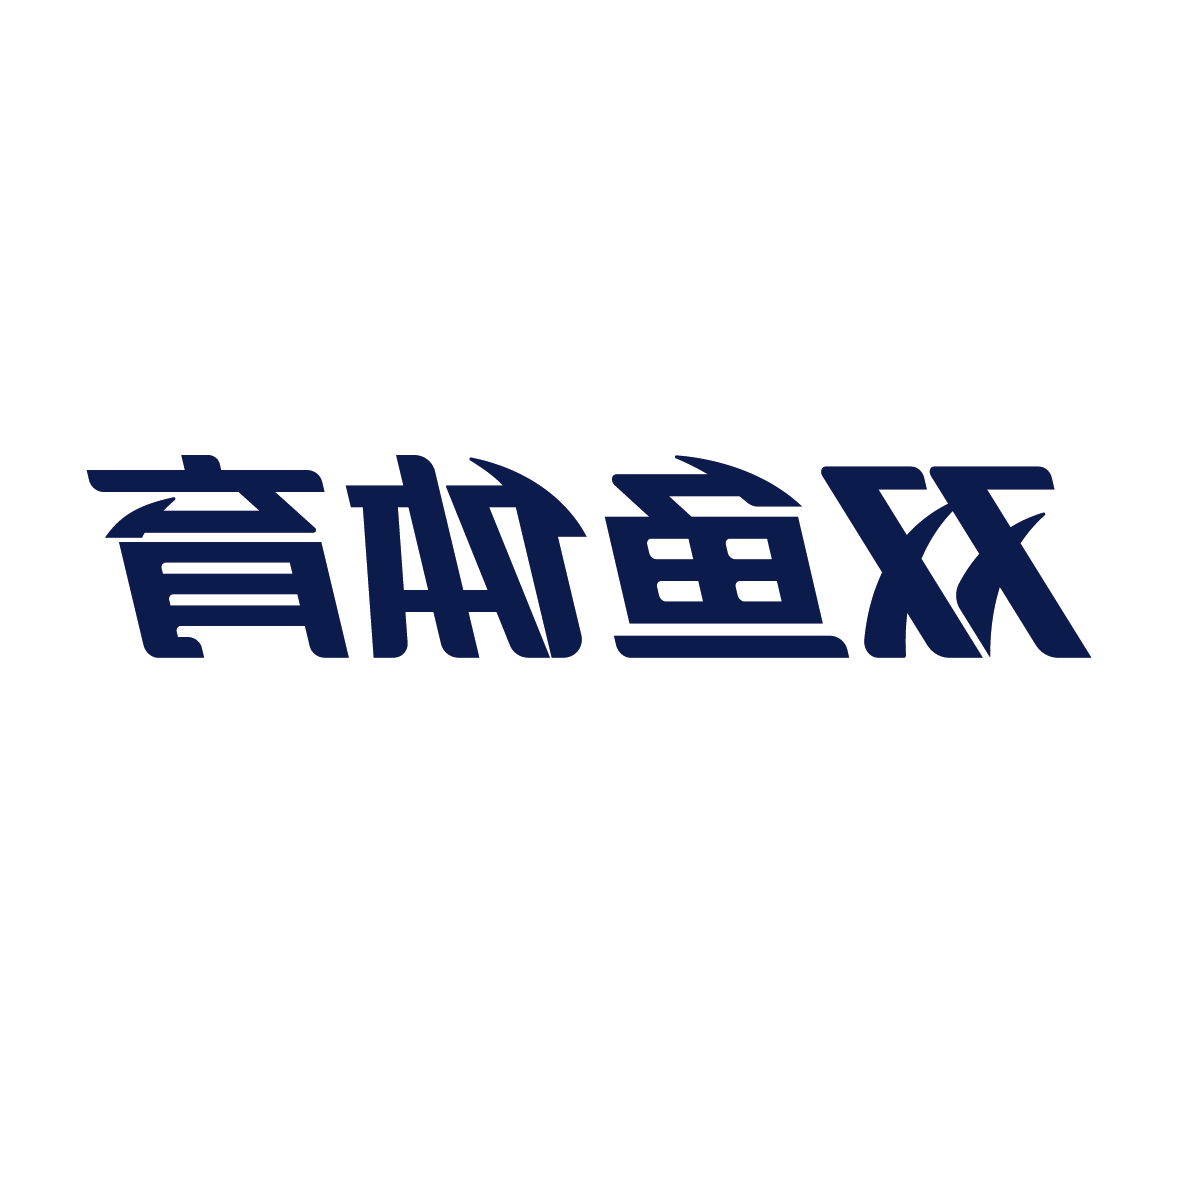 广州星空体育官网
体育用品集团有限公司产供销协同数字化建设项目招标公告